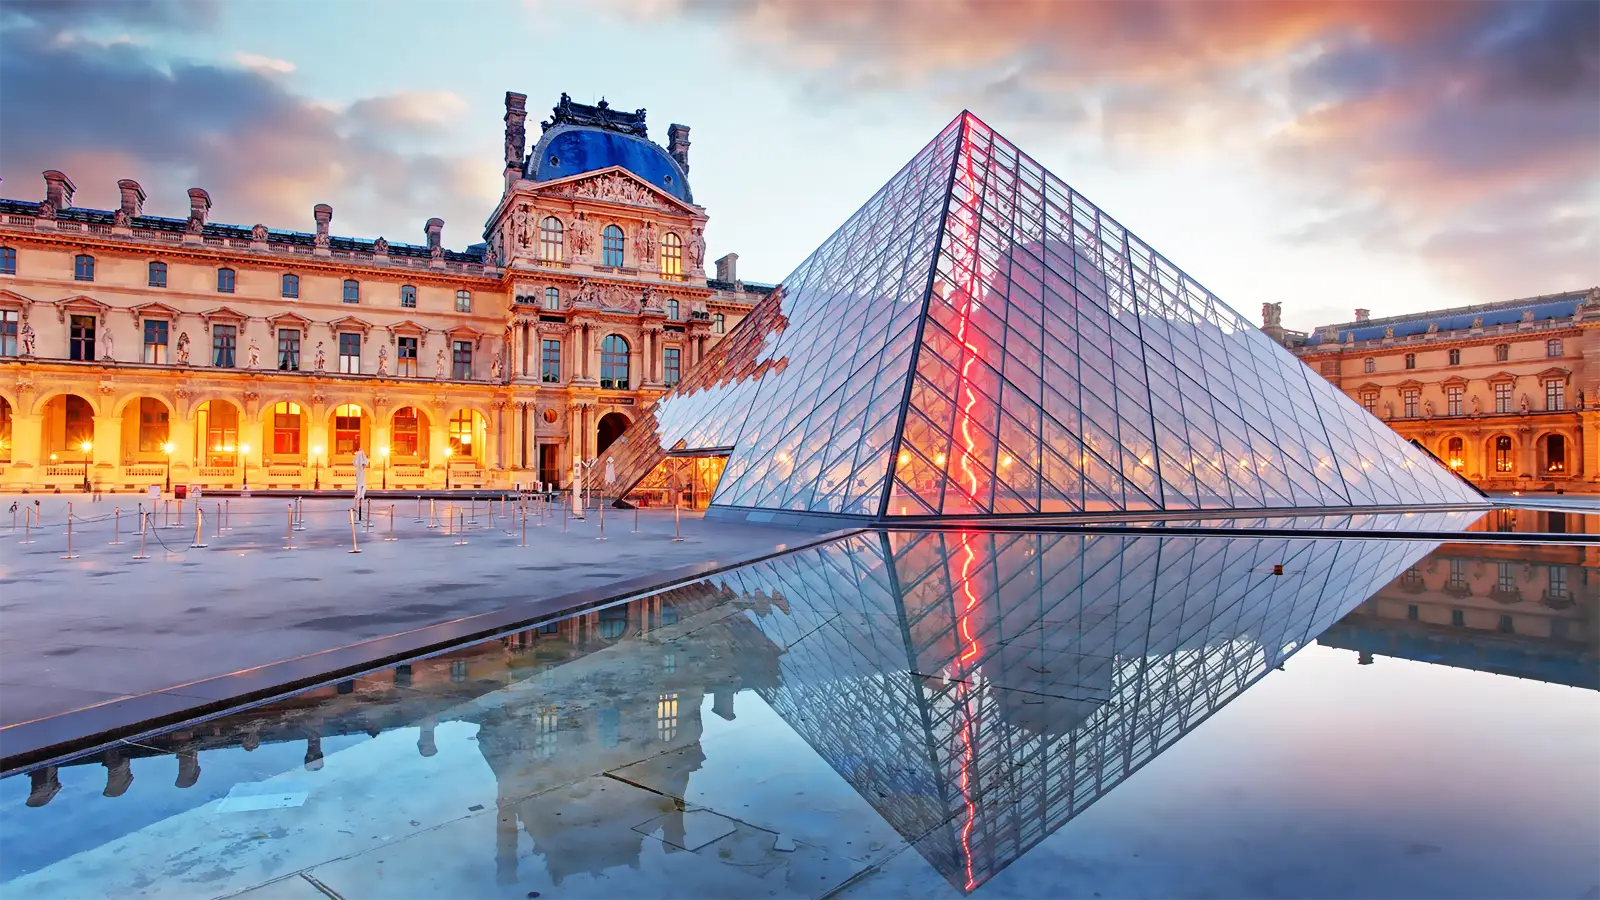 Bảo tàng Louvre - Điểm đến dành cho người yêu nghệ thuật